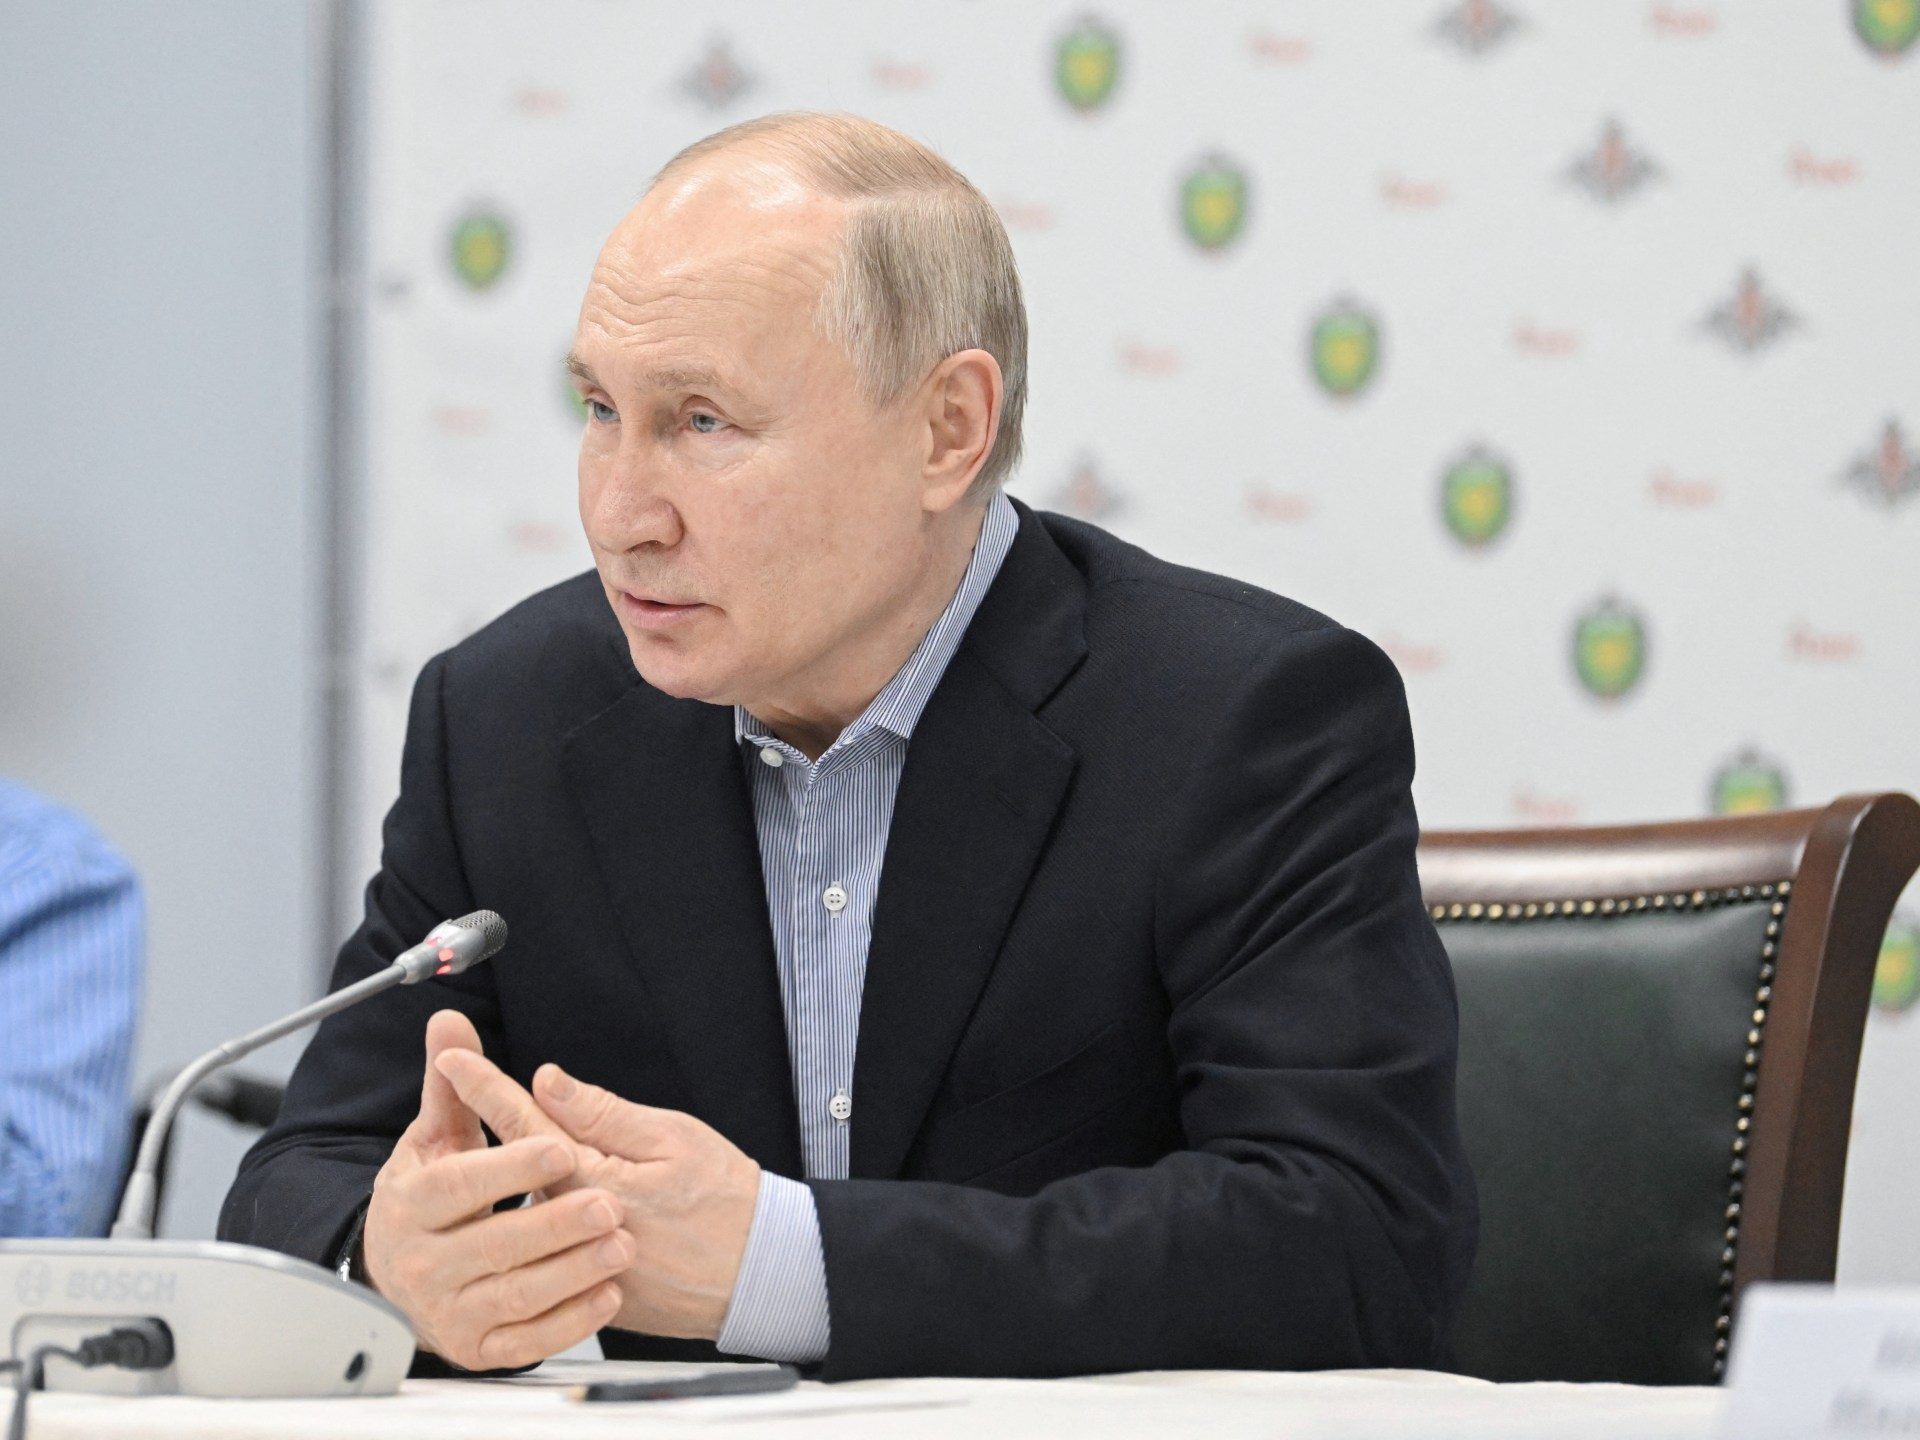 Putin vows to intensify strikes on Ukraine after deadly Belgorod attack | Russia-Ukraine war News